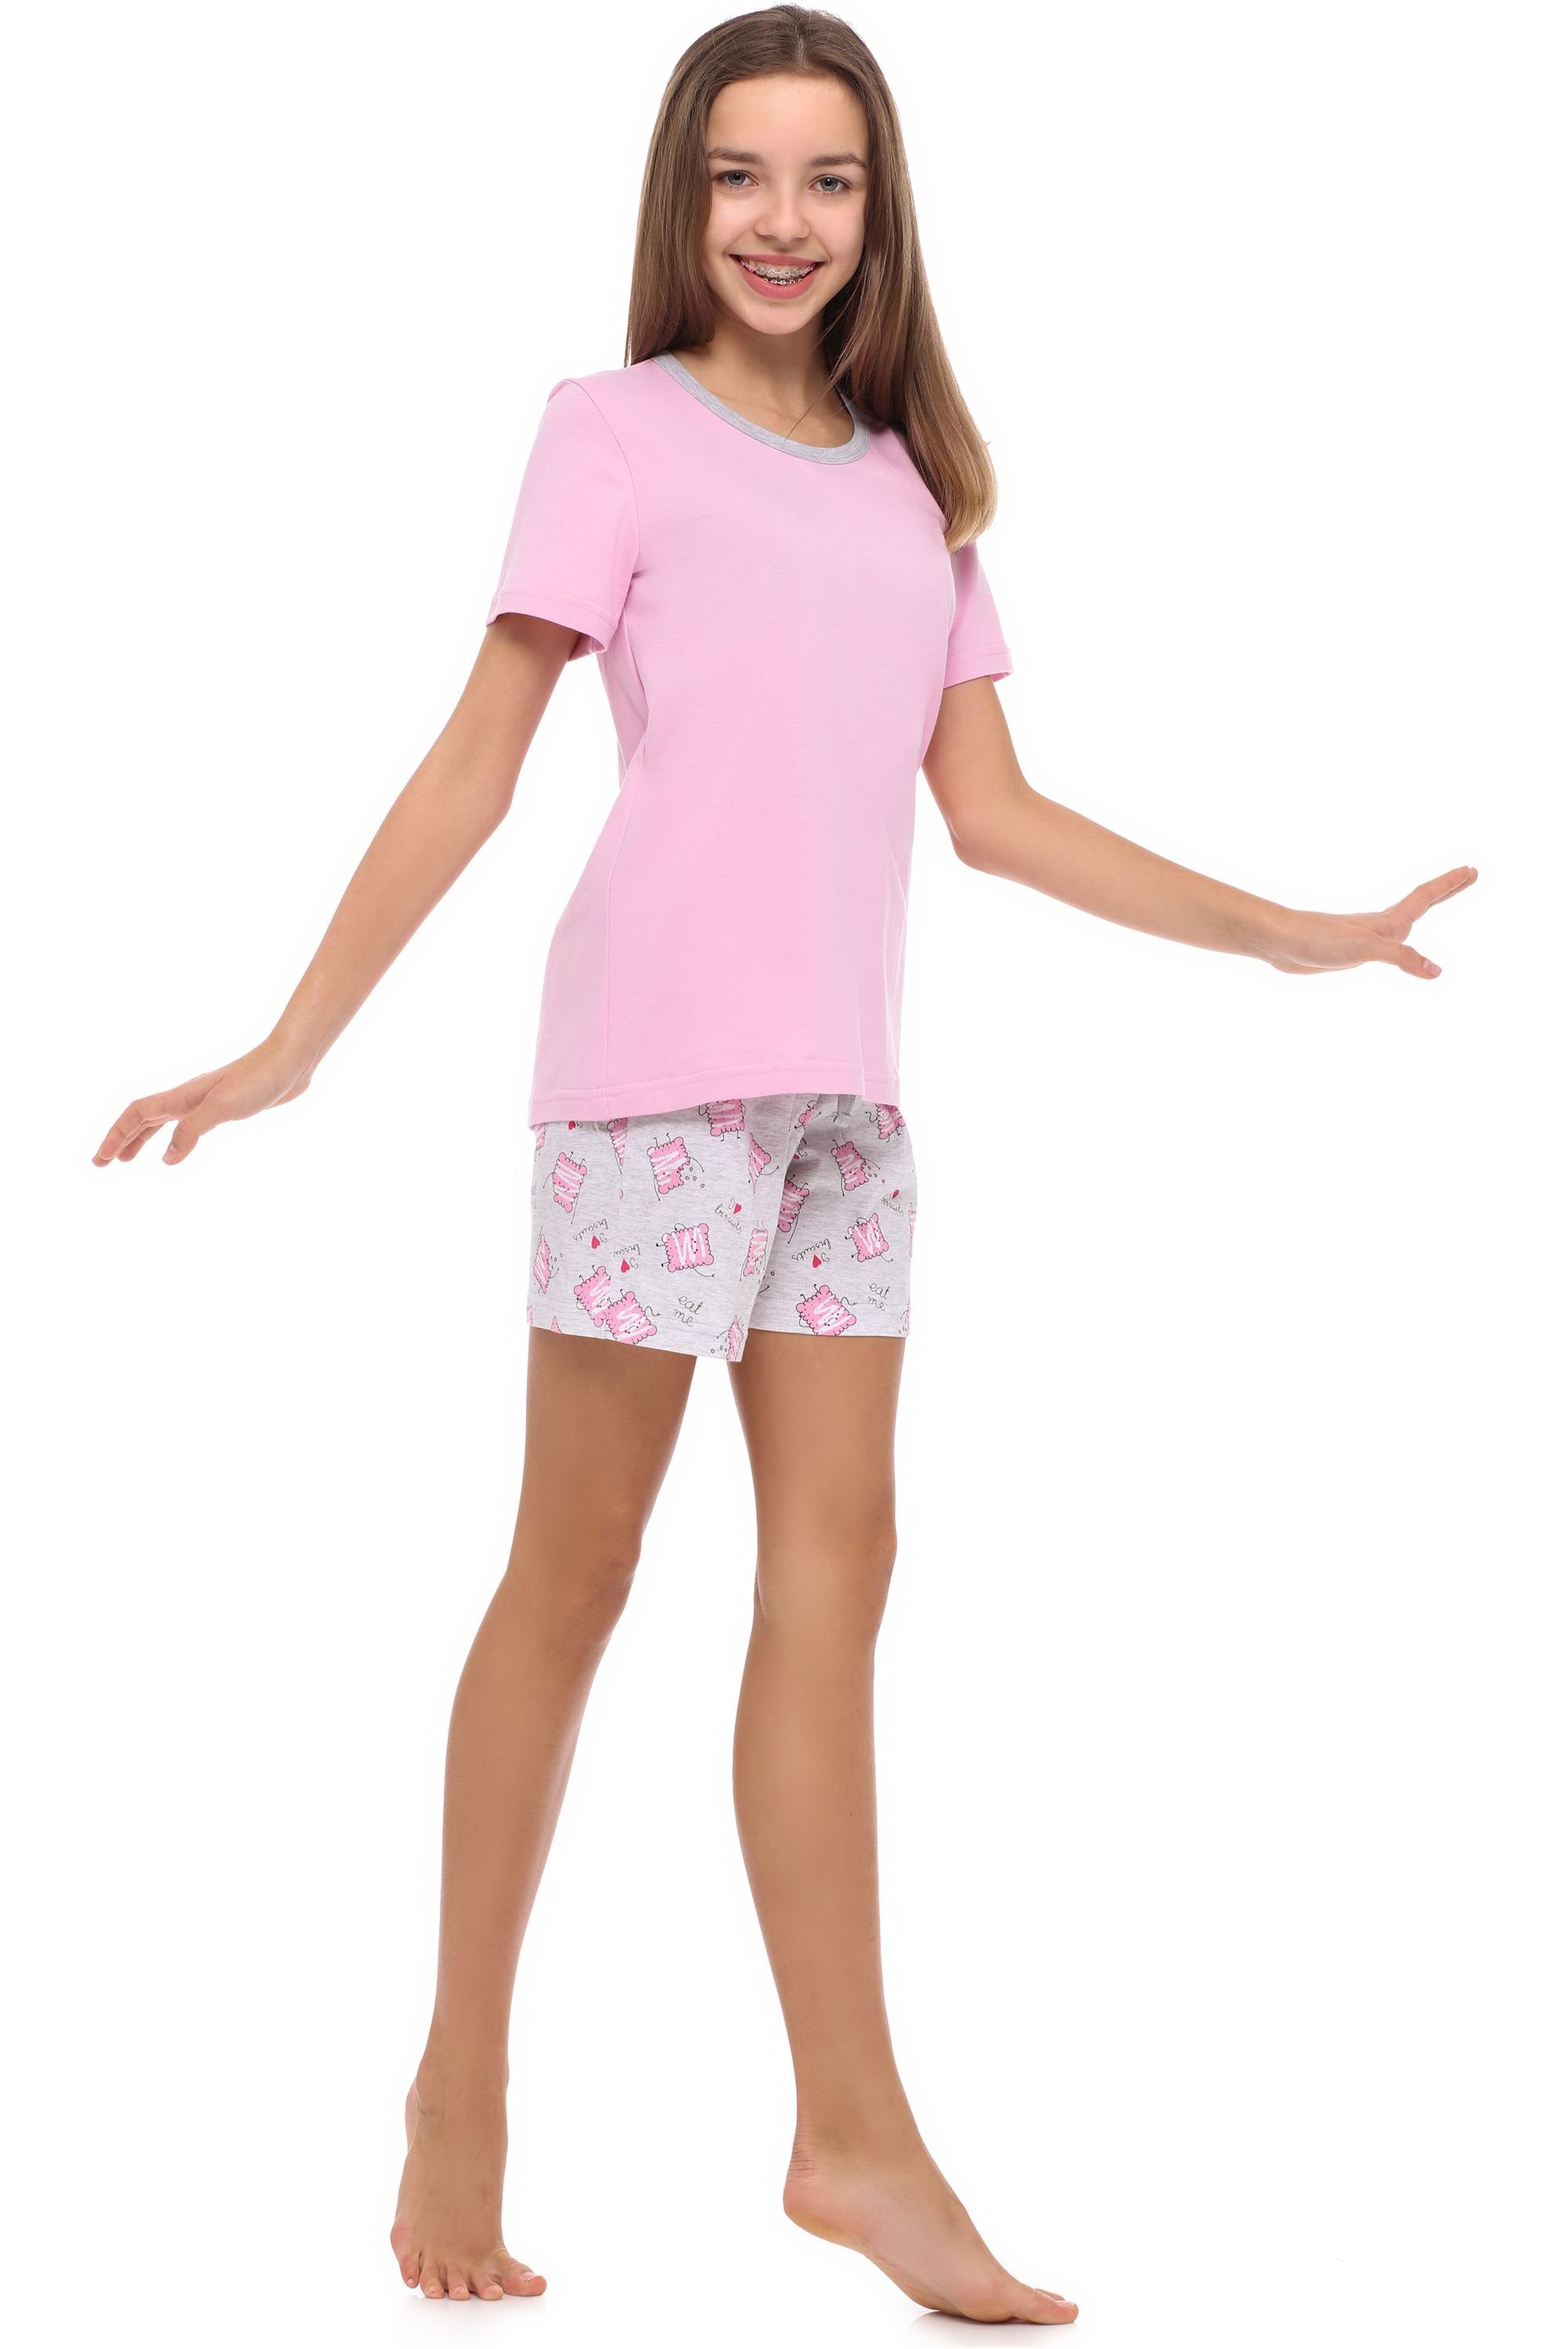 Schlafanzug Jugend Mädchen Merry Schlafanzug Style MS10-239 Rosa/Kekse